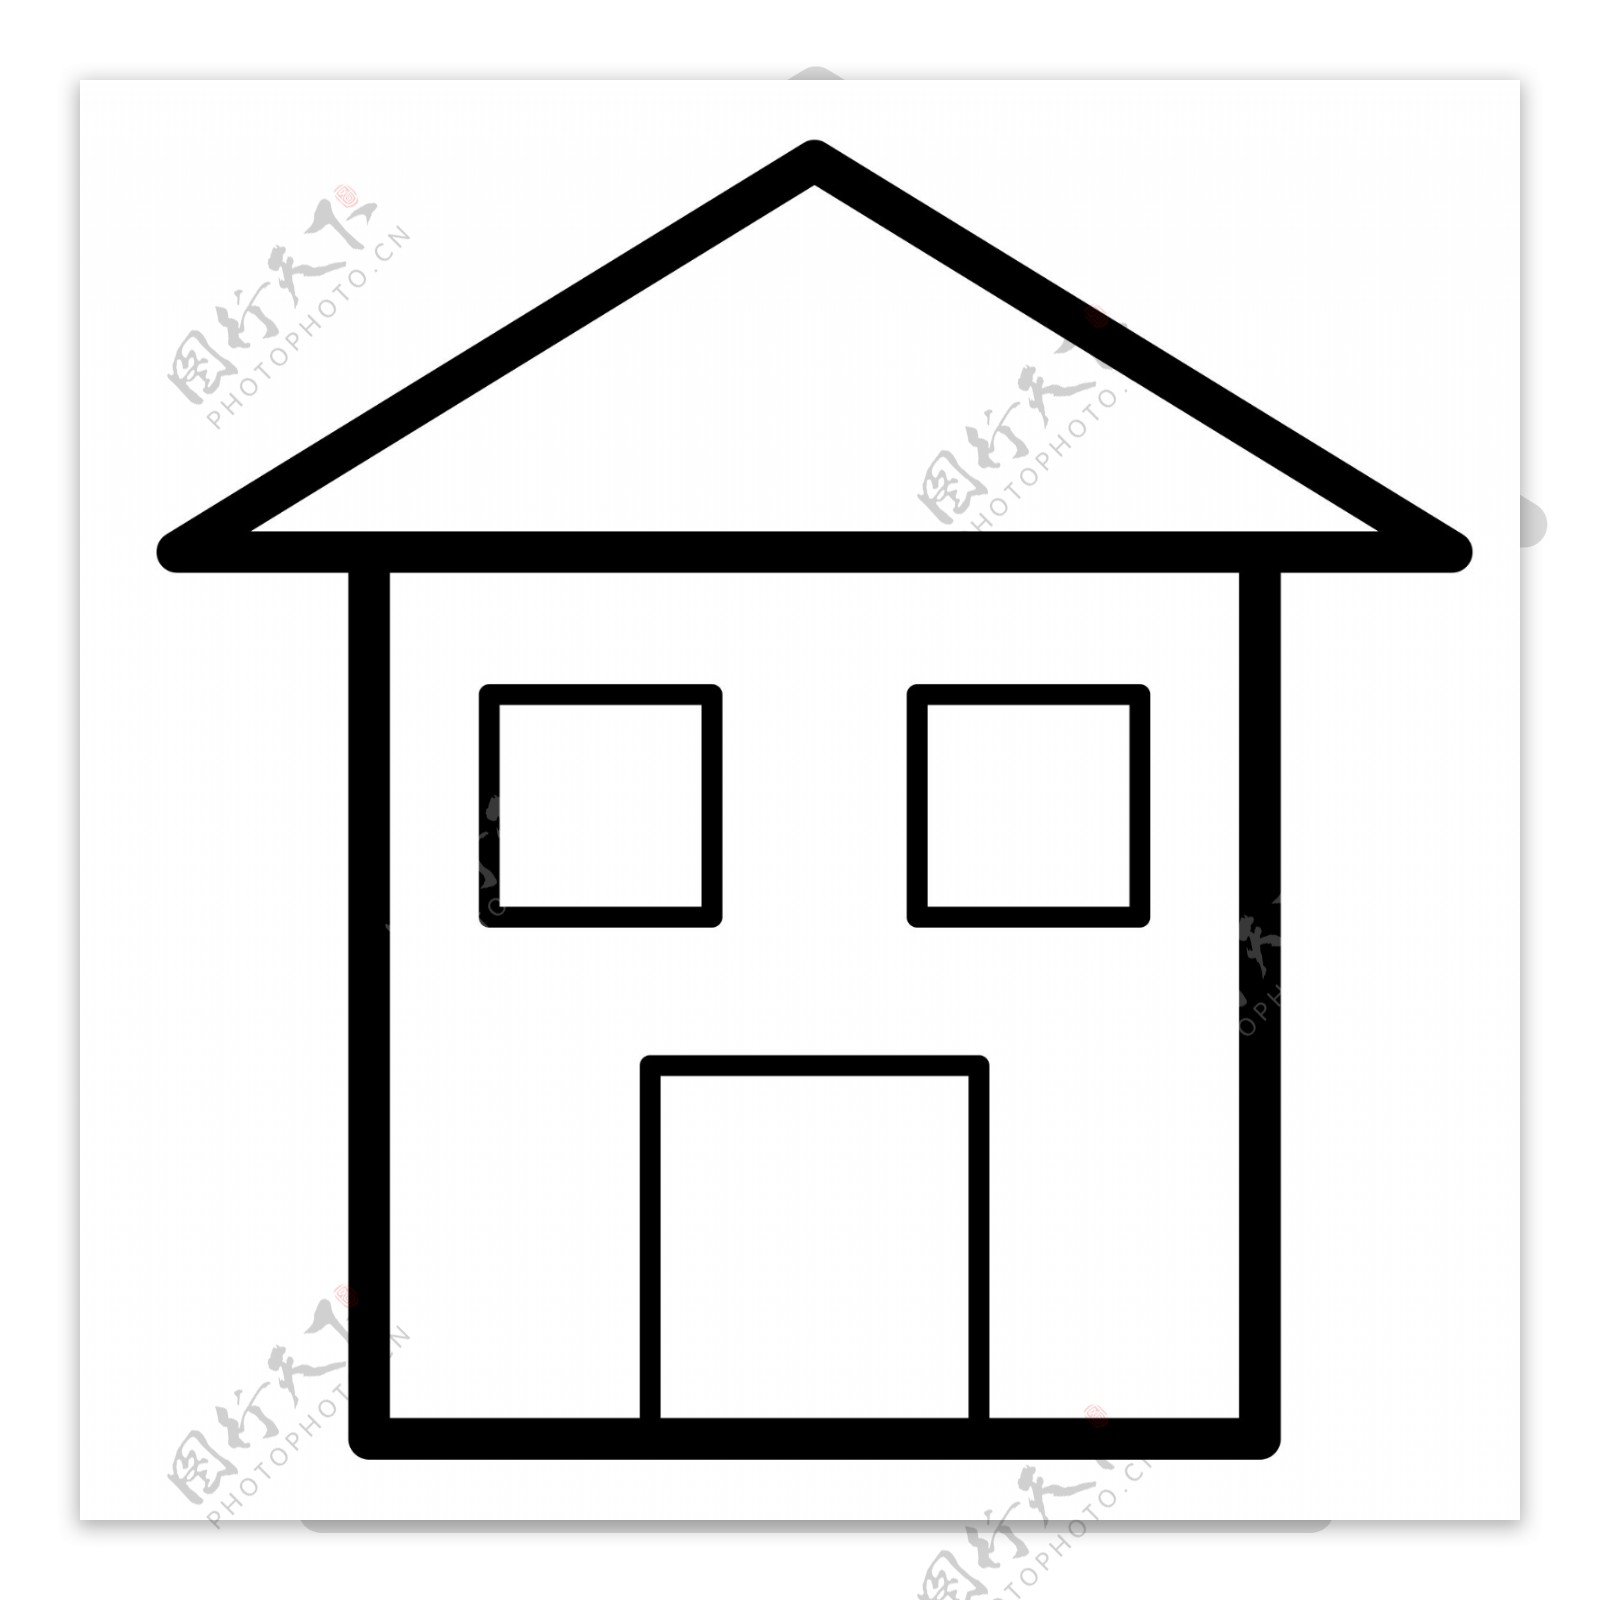 黑色几何三角形建筑房屋元素